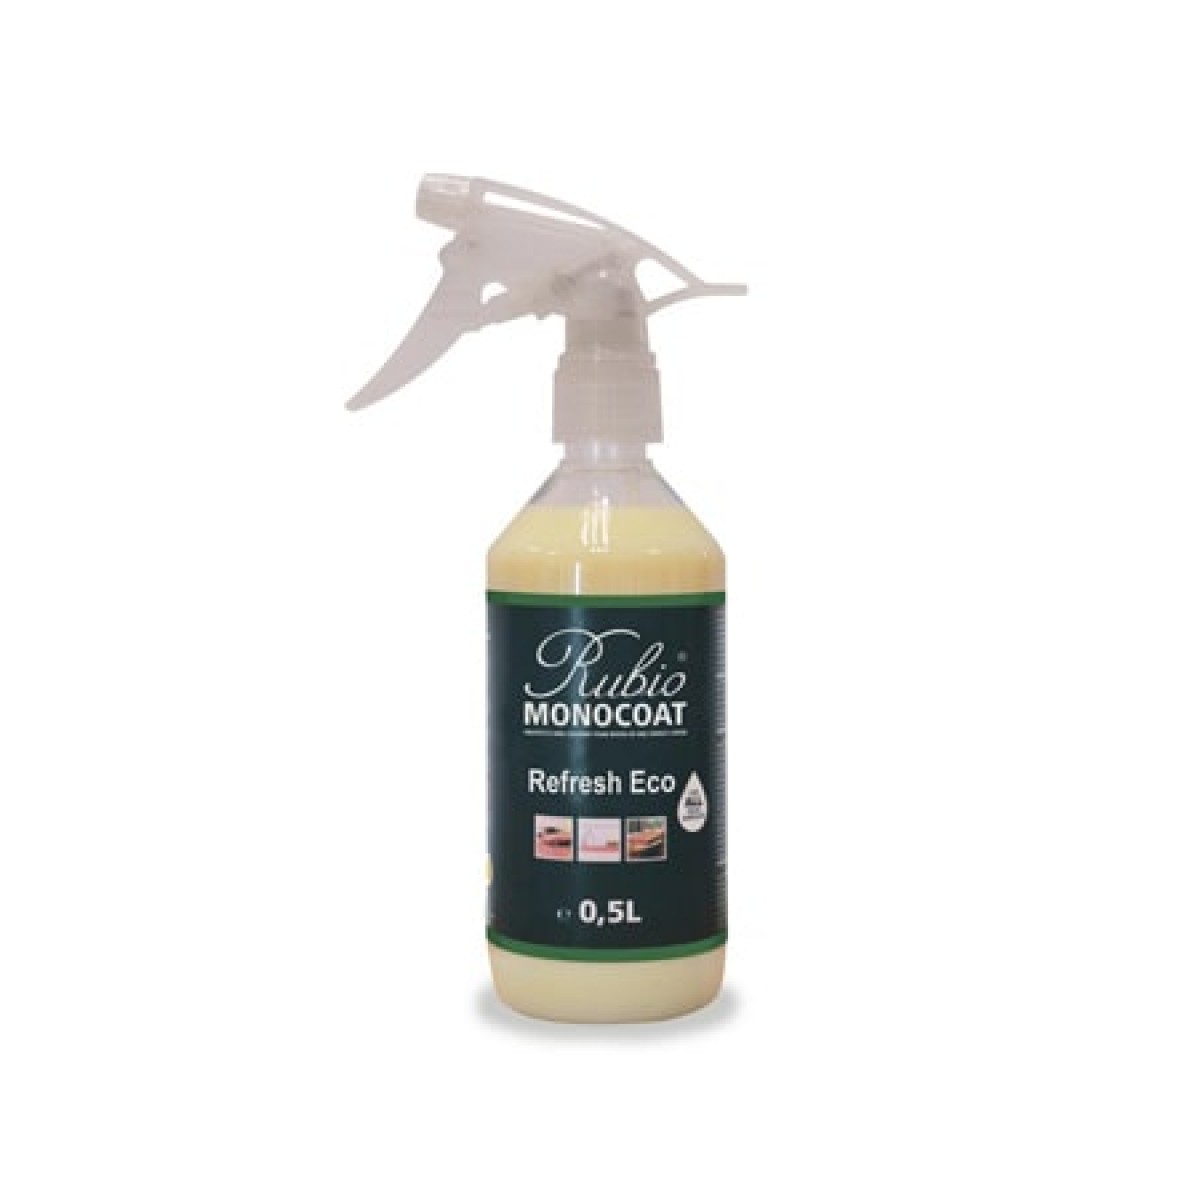 Rubio Monocoat Refresh Eco Spray